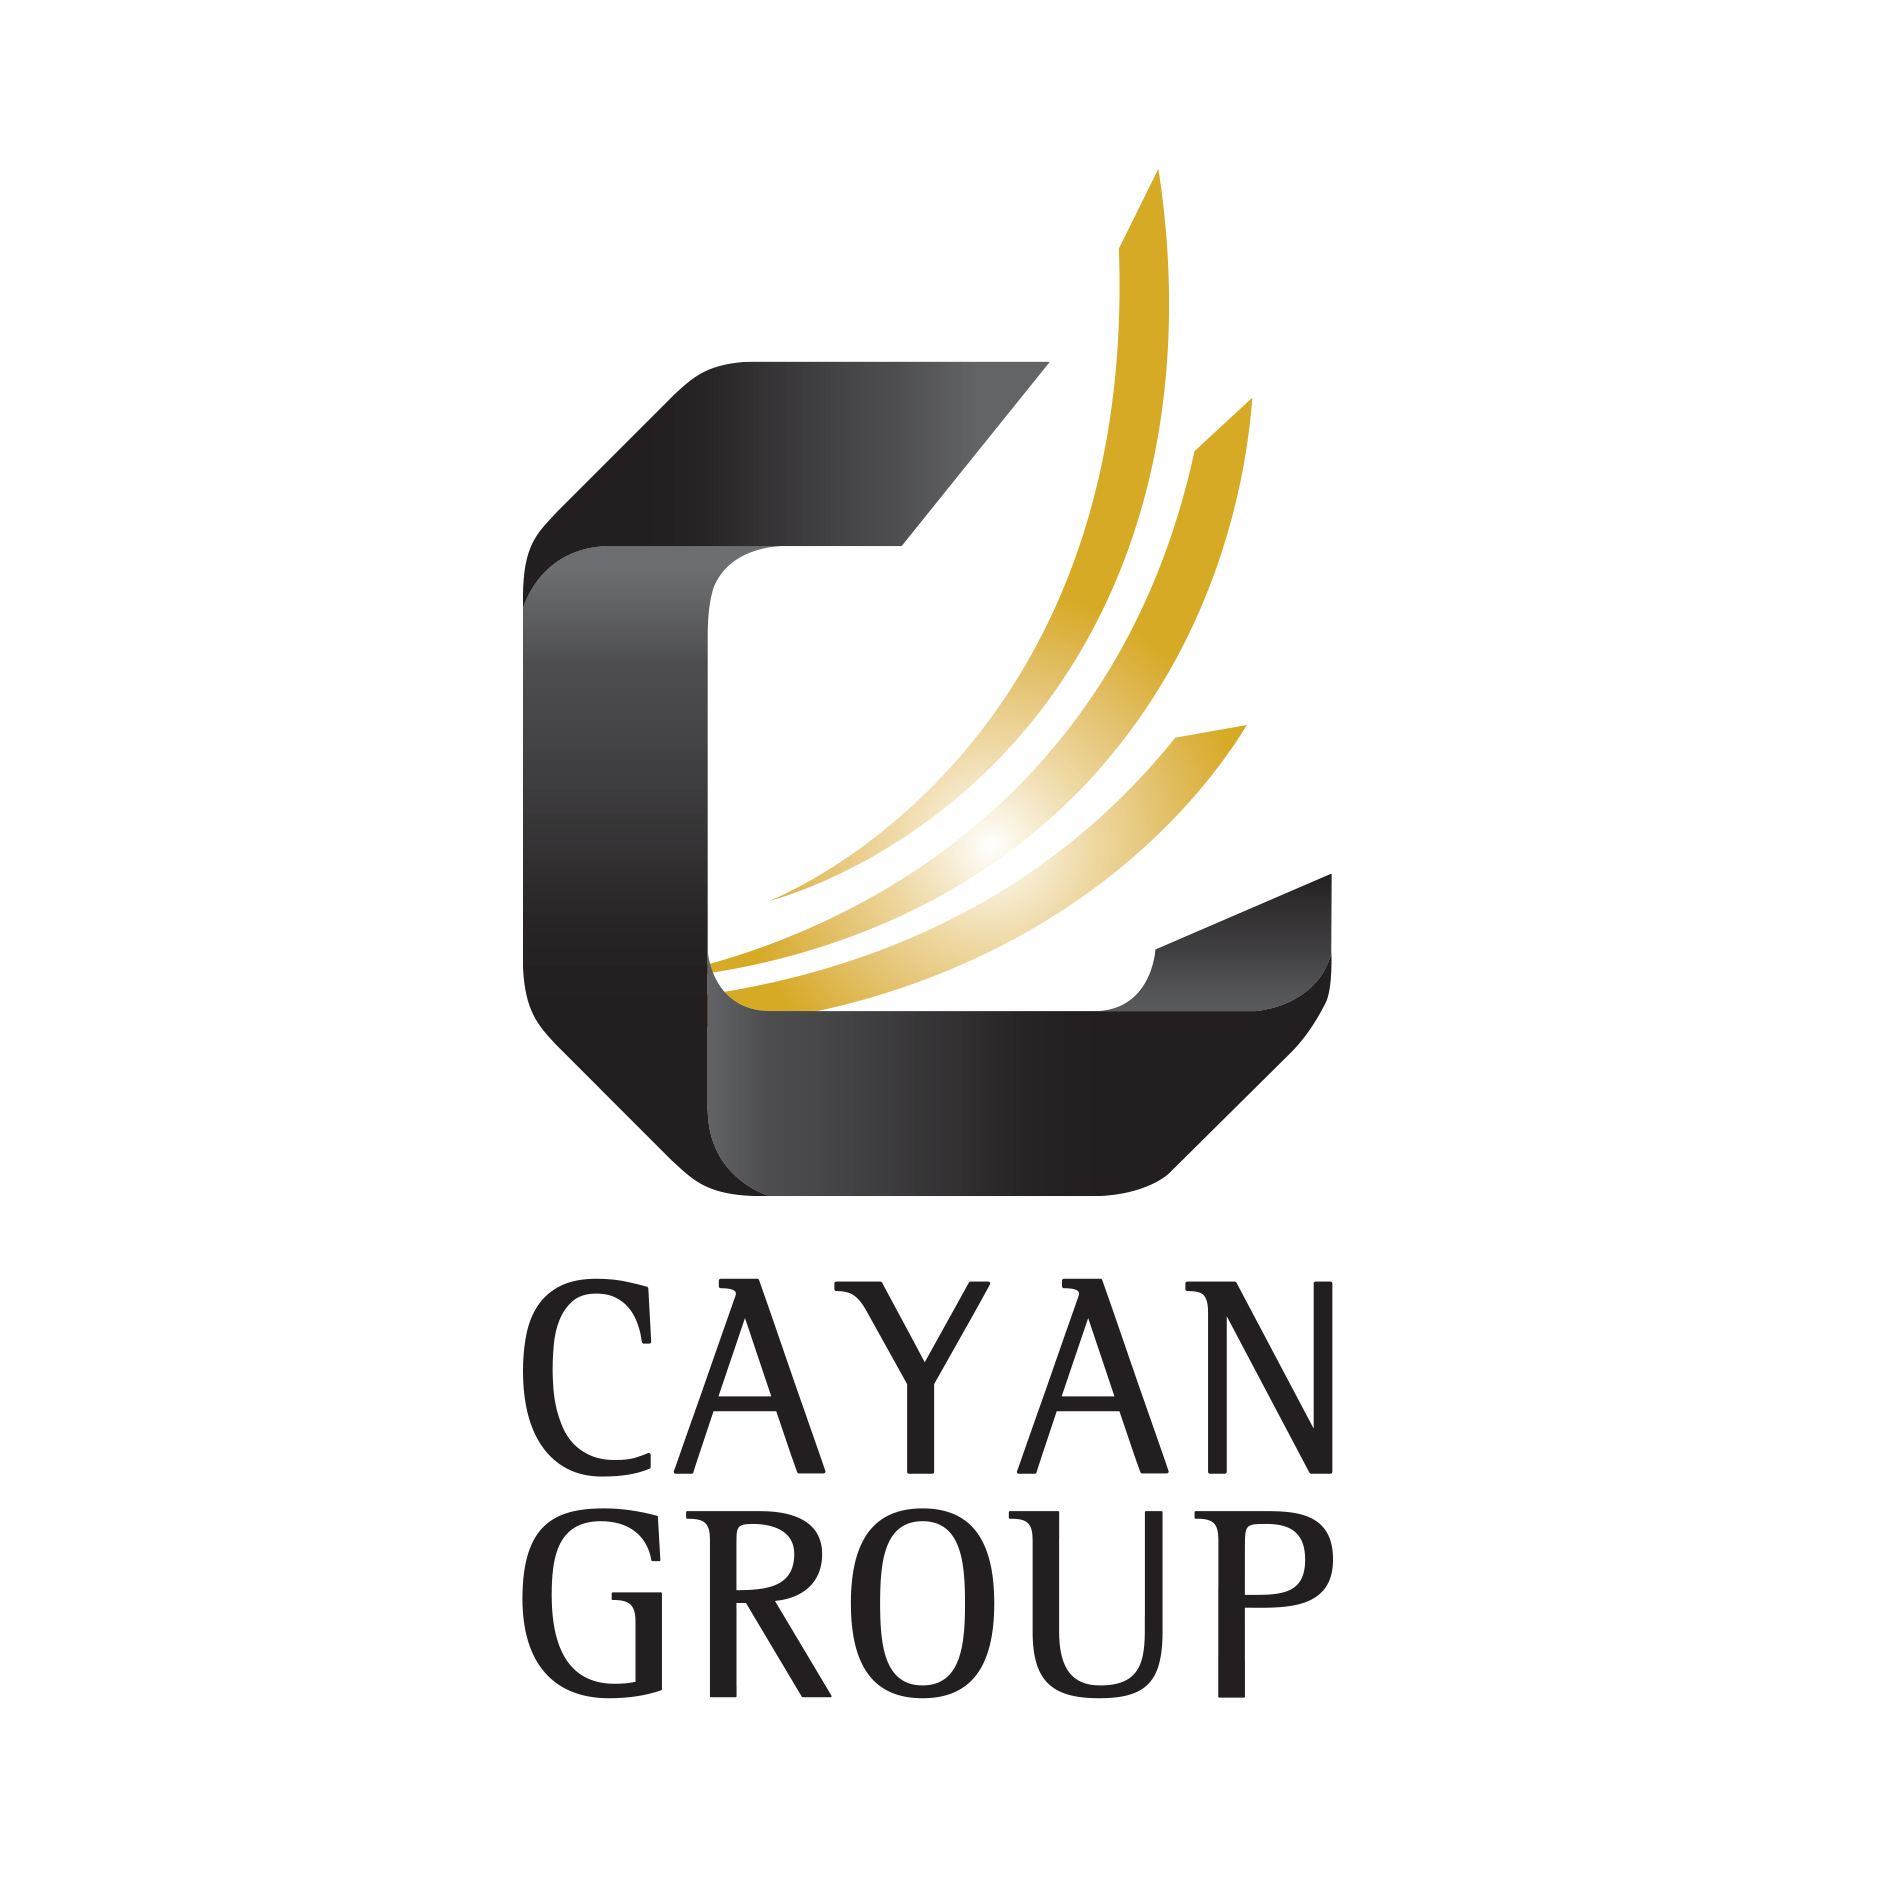 Cayan Group - logo